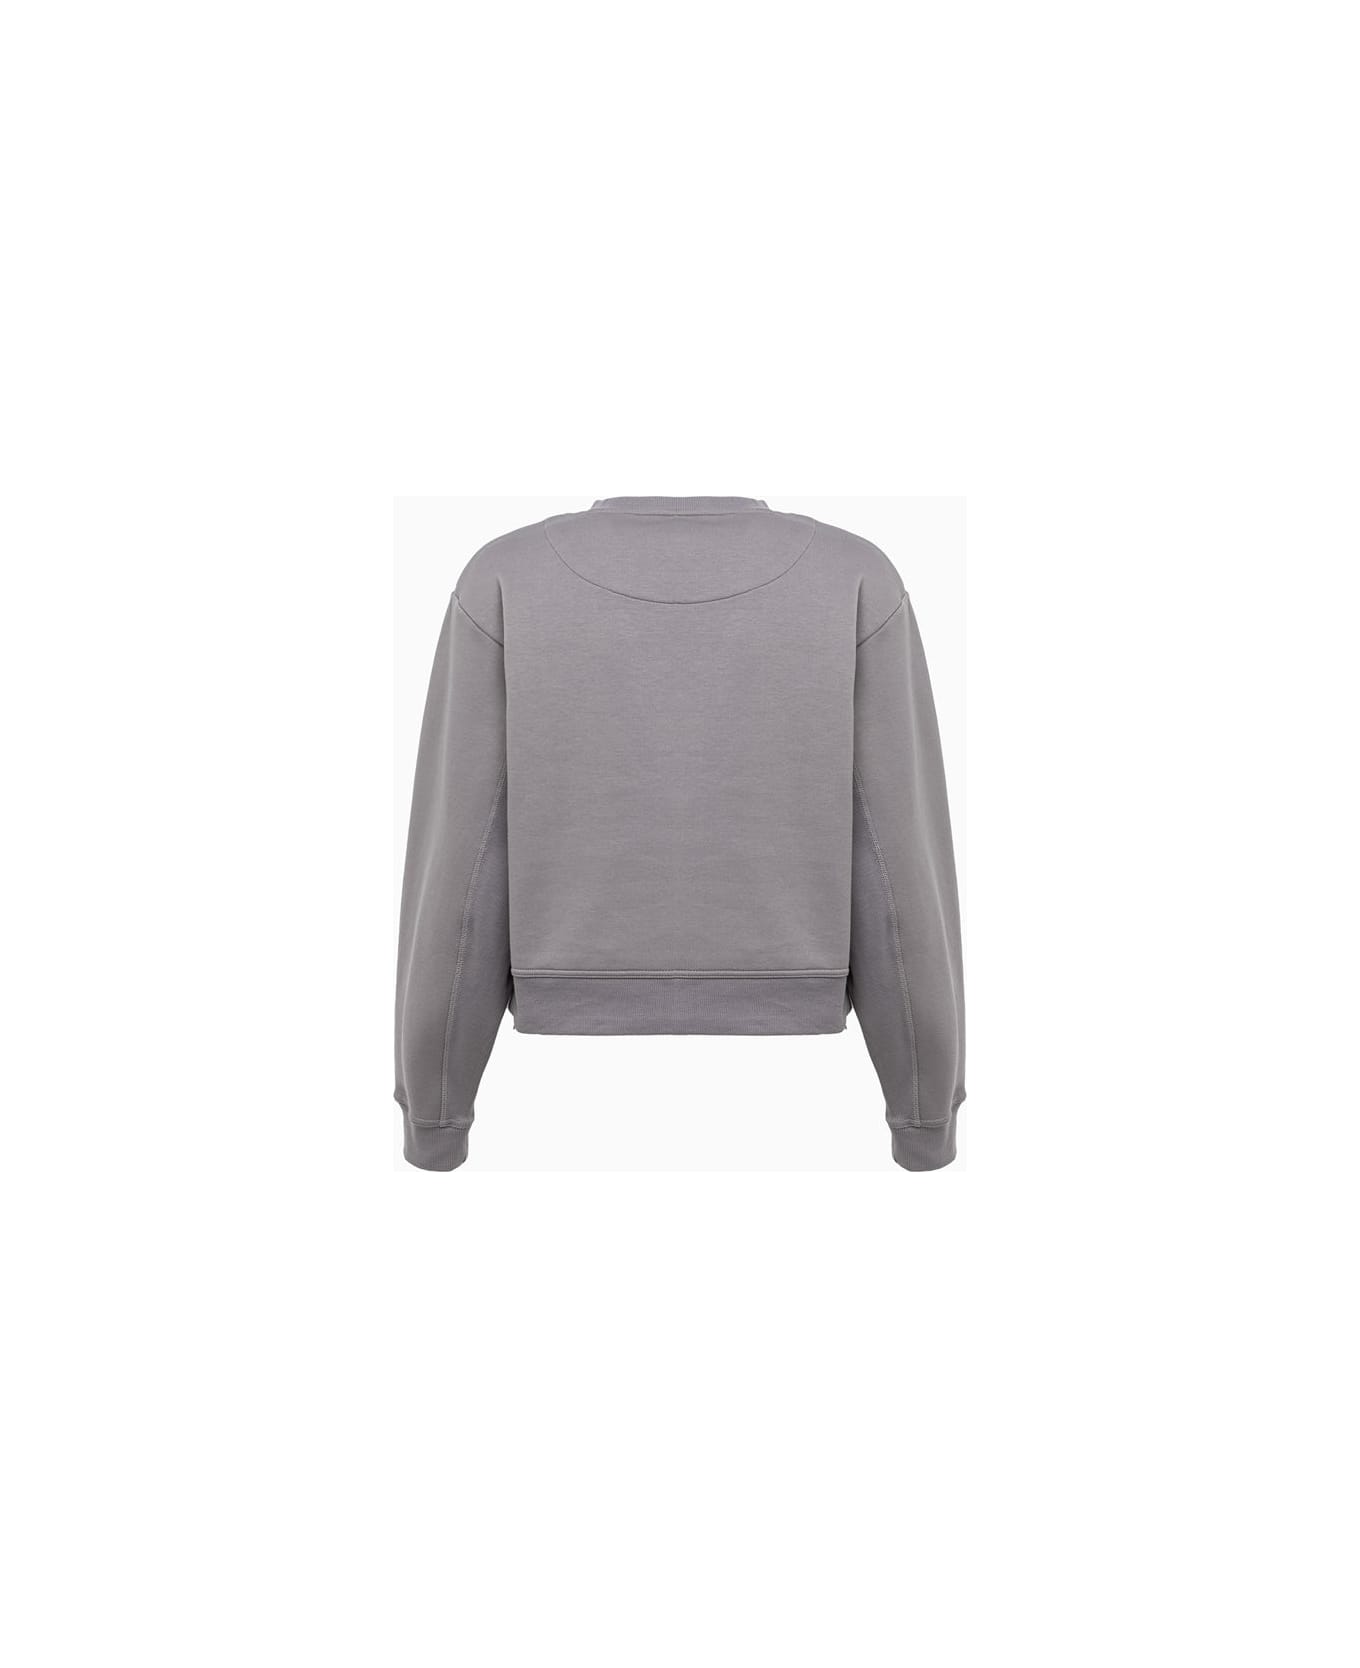 Adidas by Stella McCartney Sweatshirt - Grey フリース